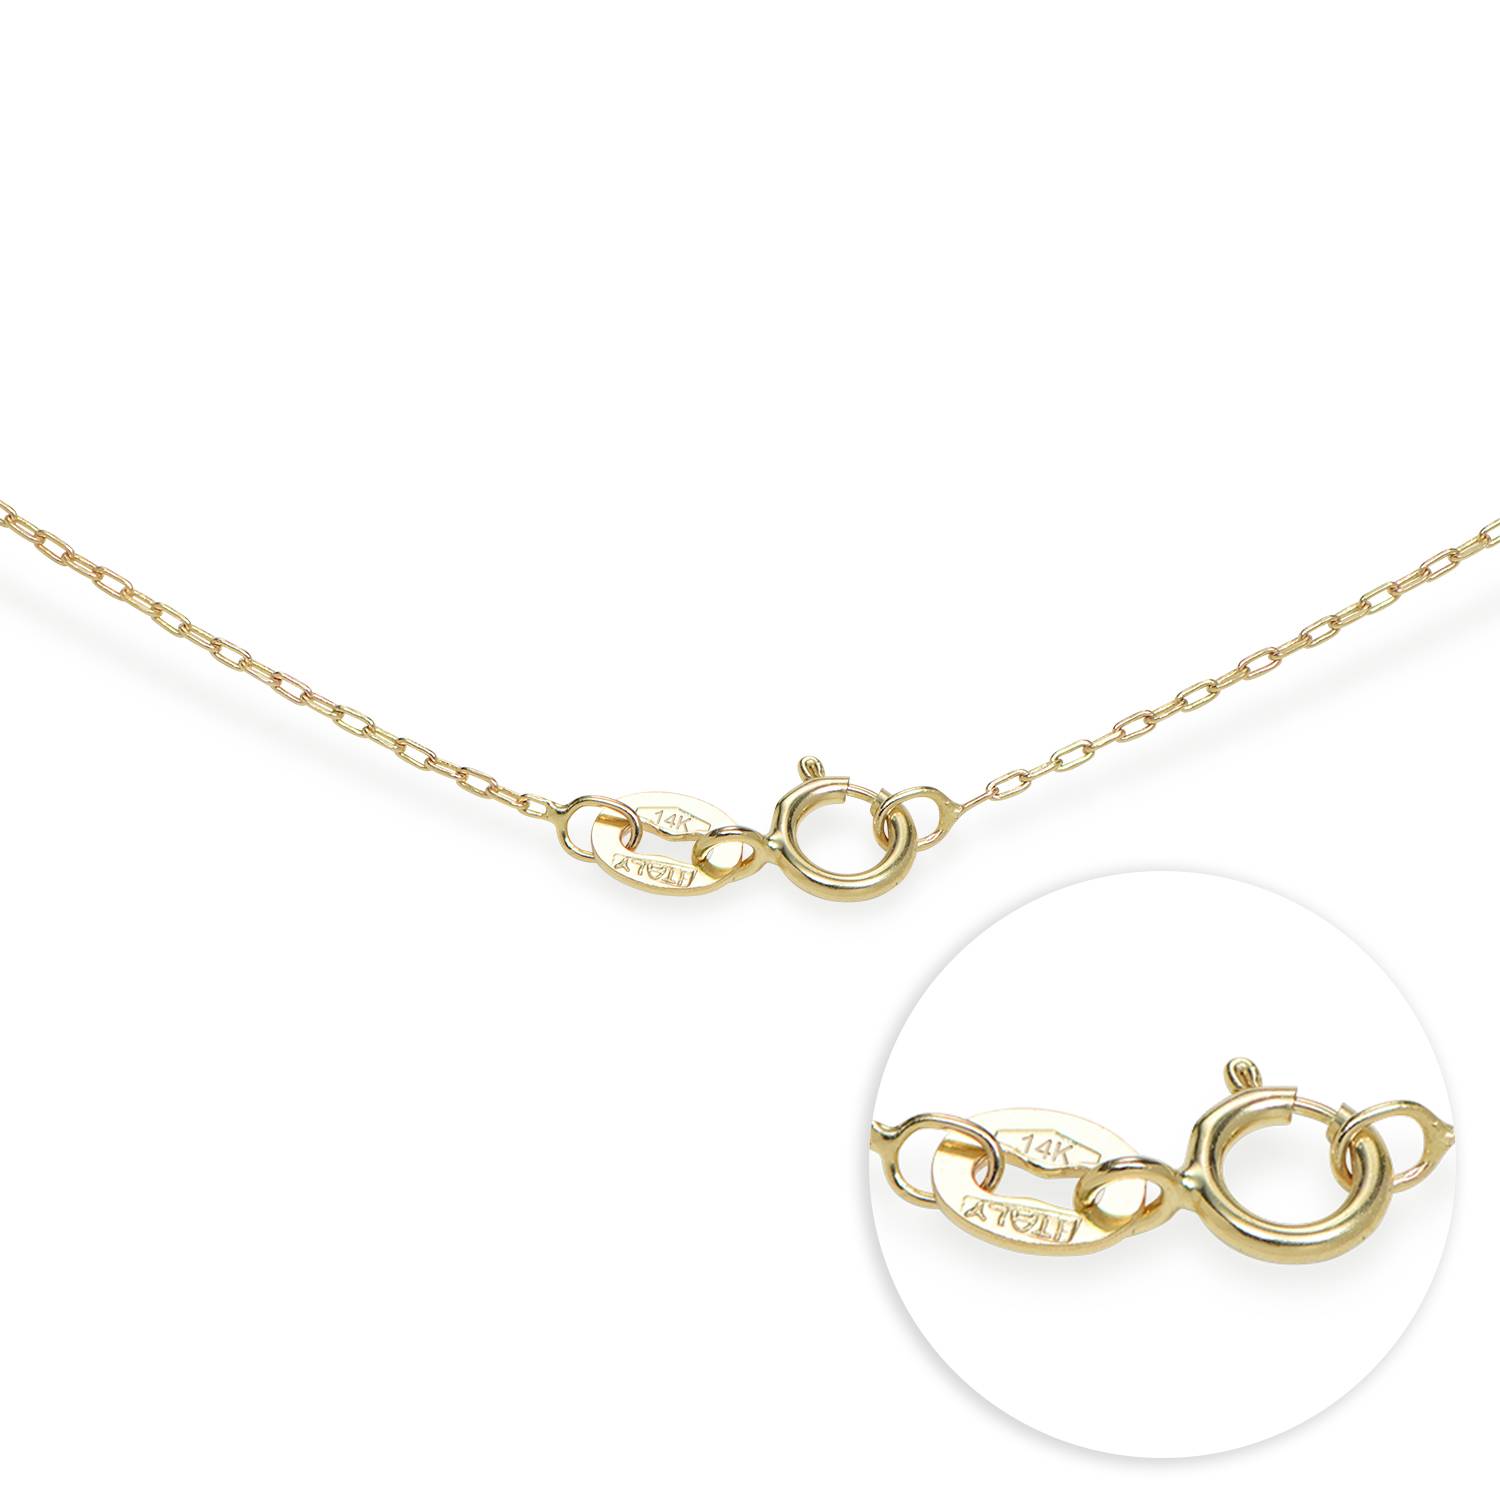 Labor Diamanten Russische Ring-Halskette mit 3 Ringen - 585er Gelbgold-2 Produktfoto